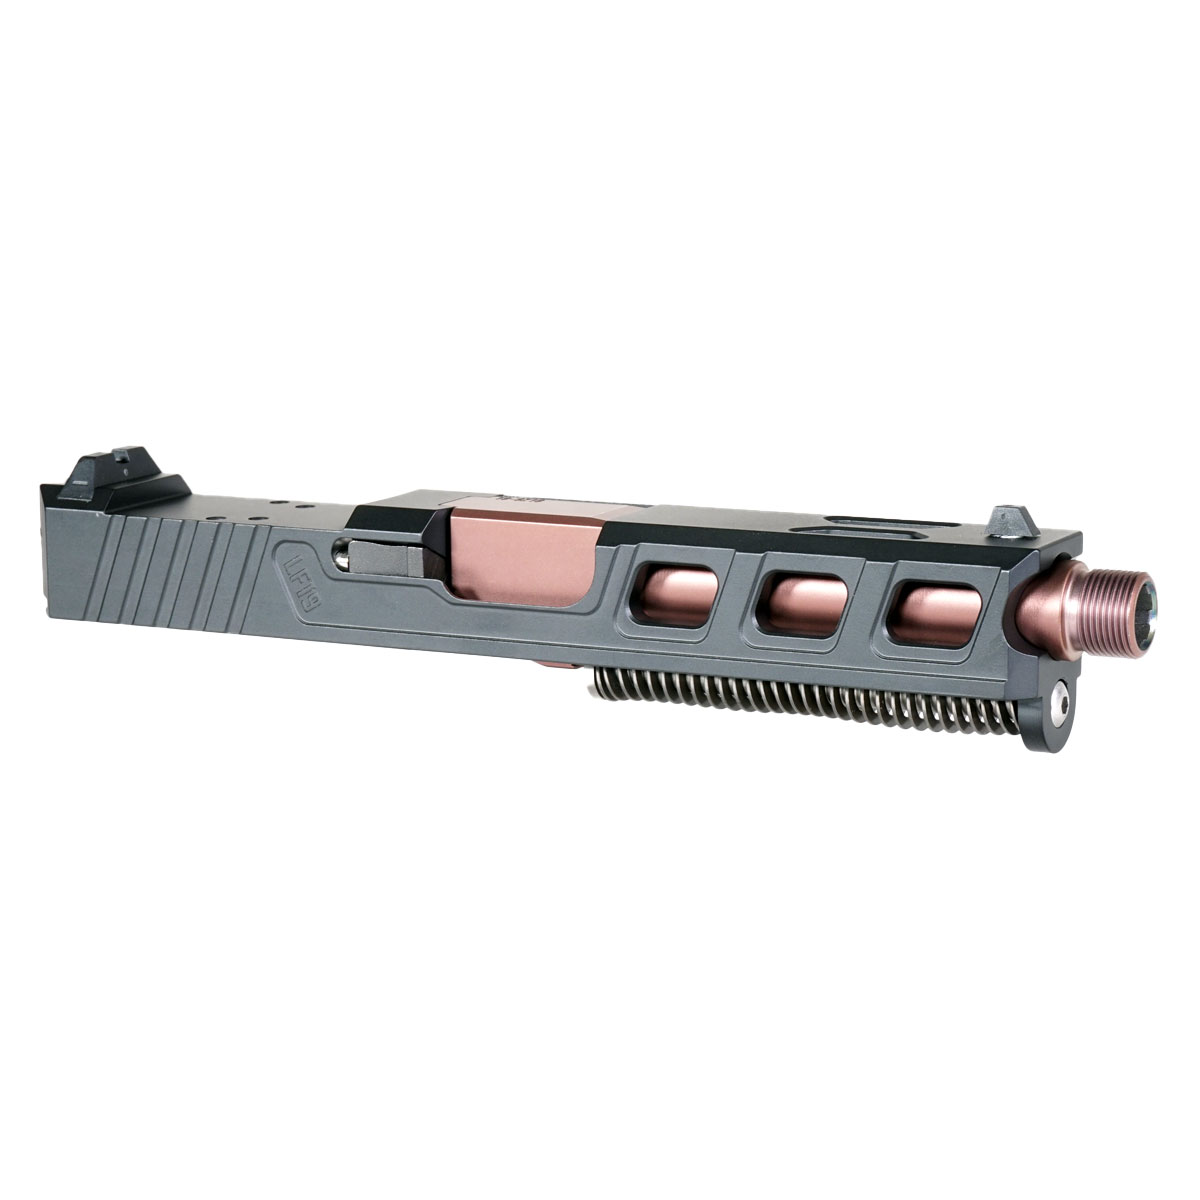 DTT 'Radioactive Waters' 9mm Complete Slide Kit - Glock 19 Gen 1-3 Compatible